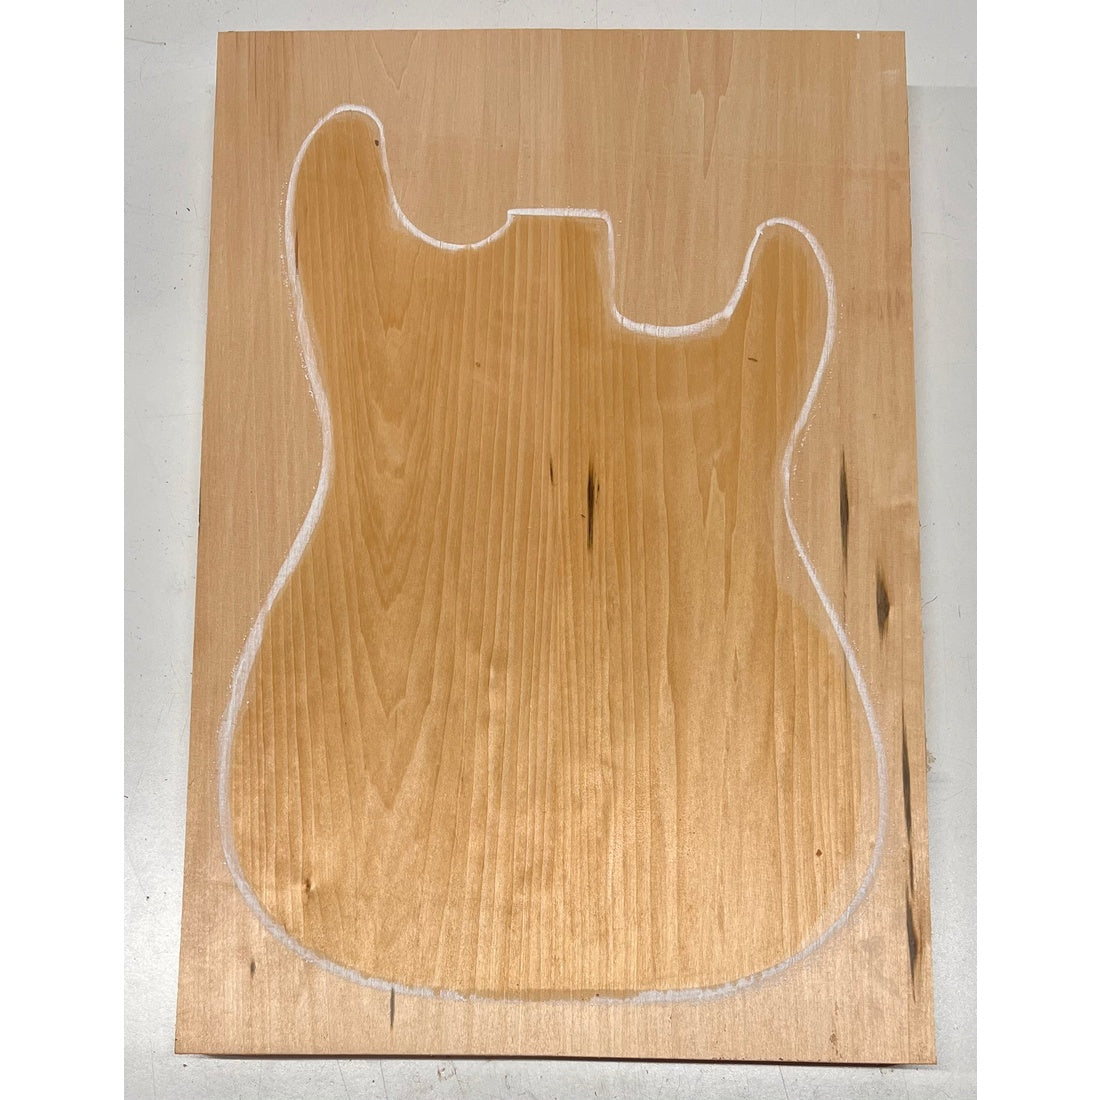 Basswood Guitar Body Blanks, 21″ x 14″ x 1-3/4″ ,10 Lbs 